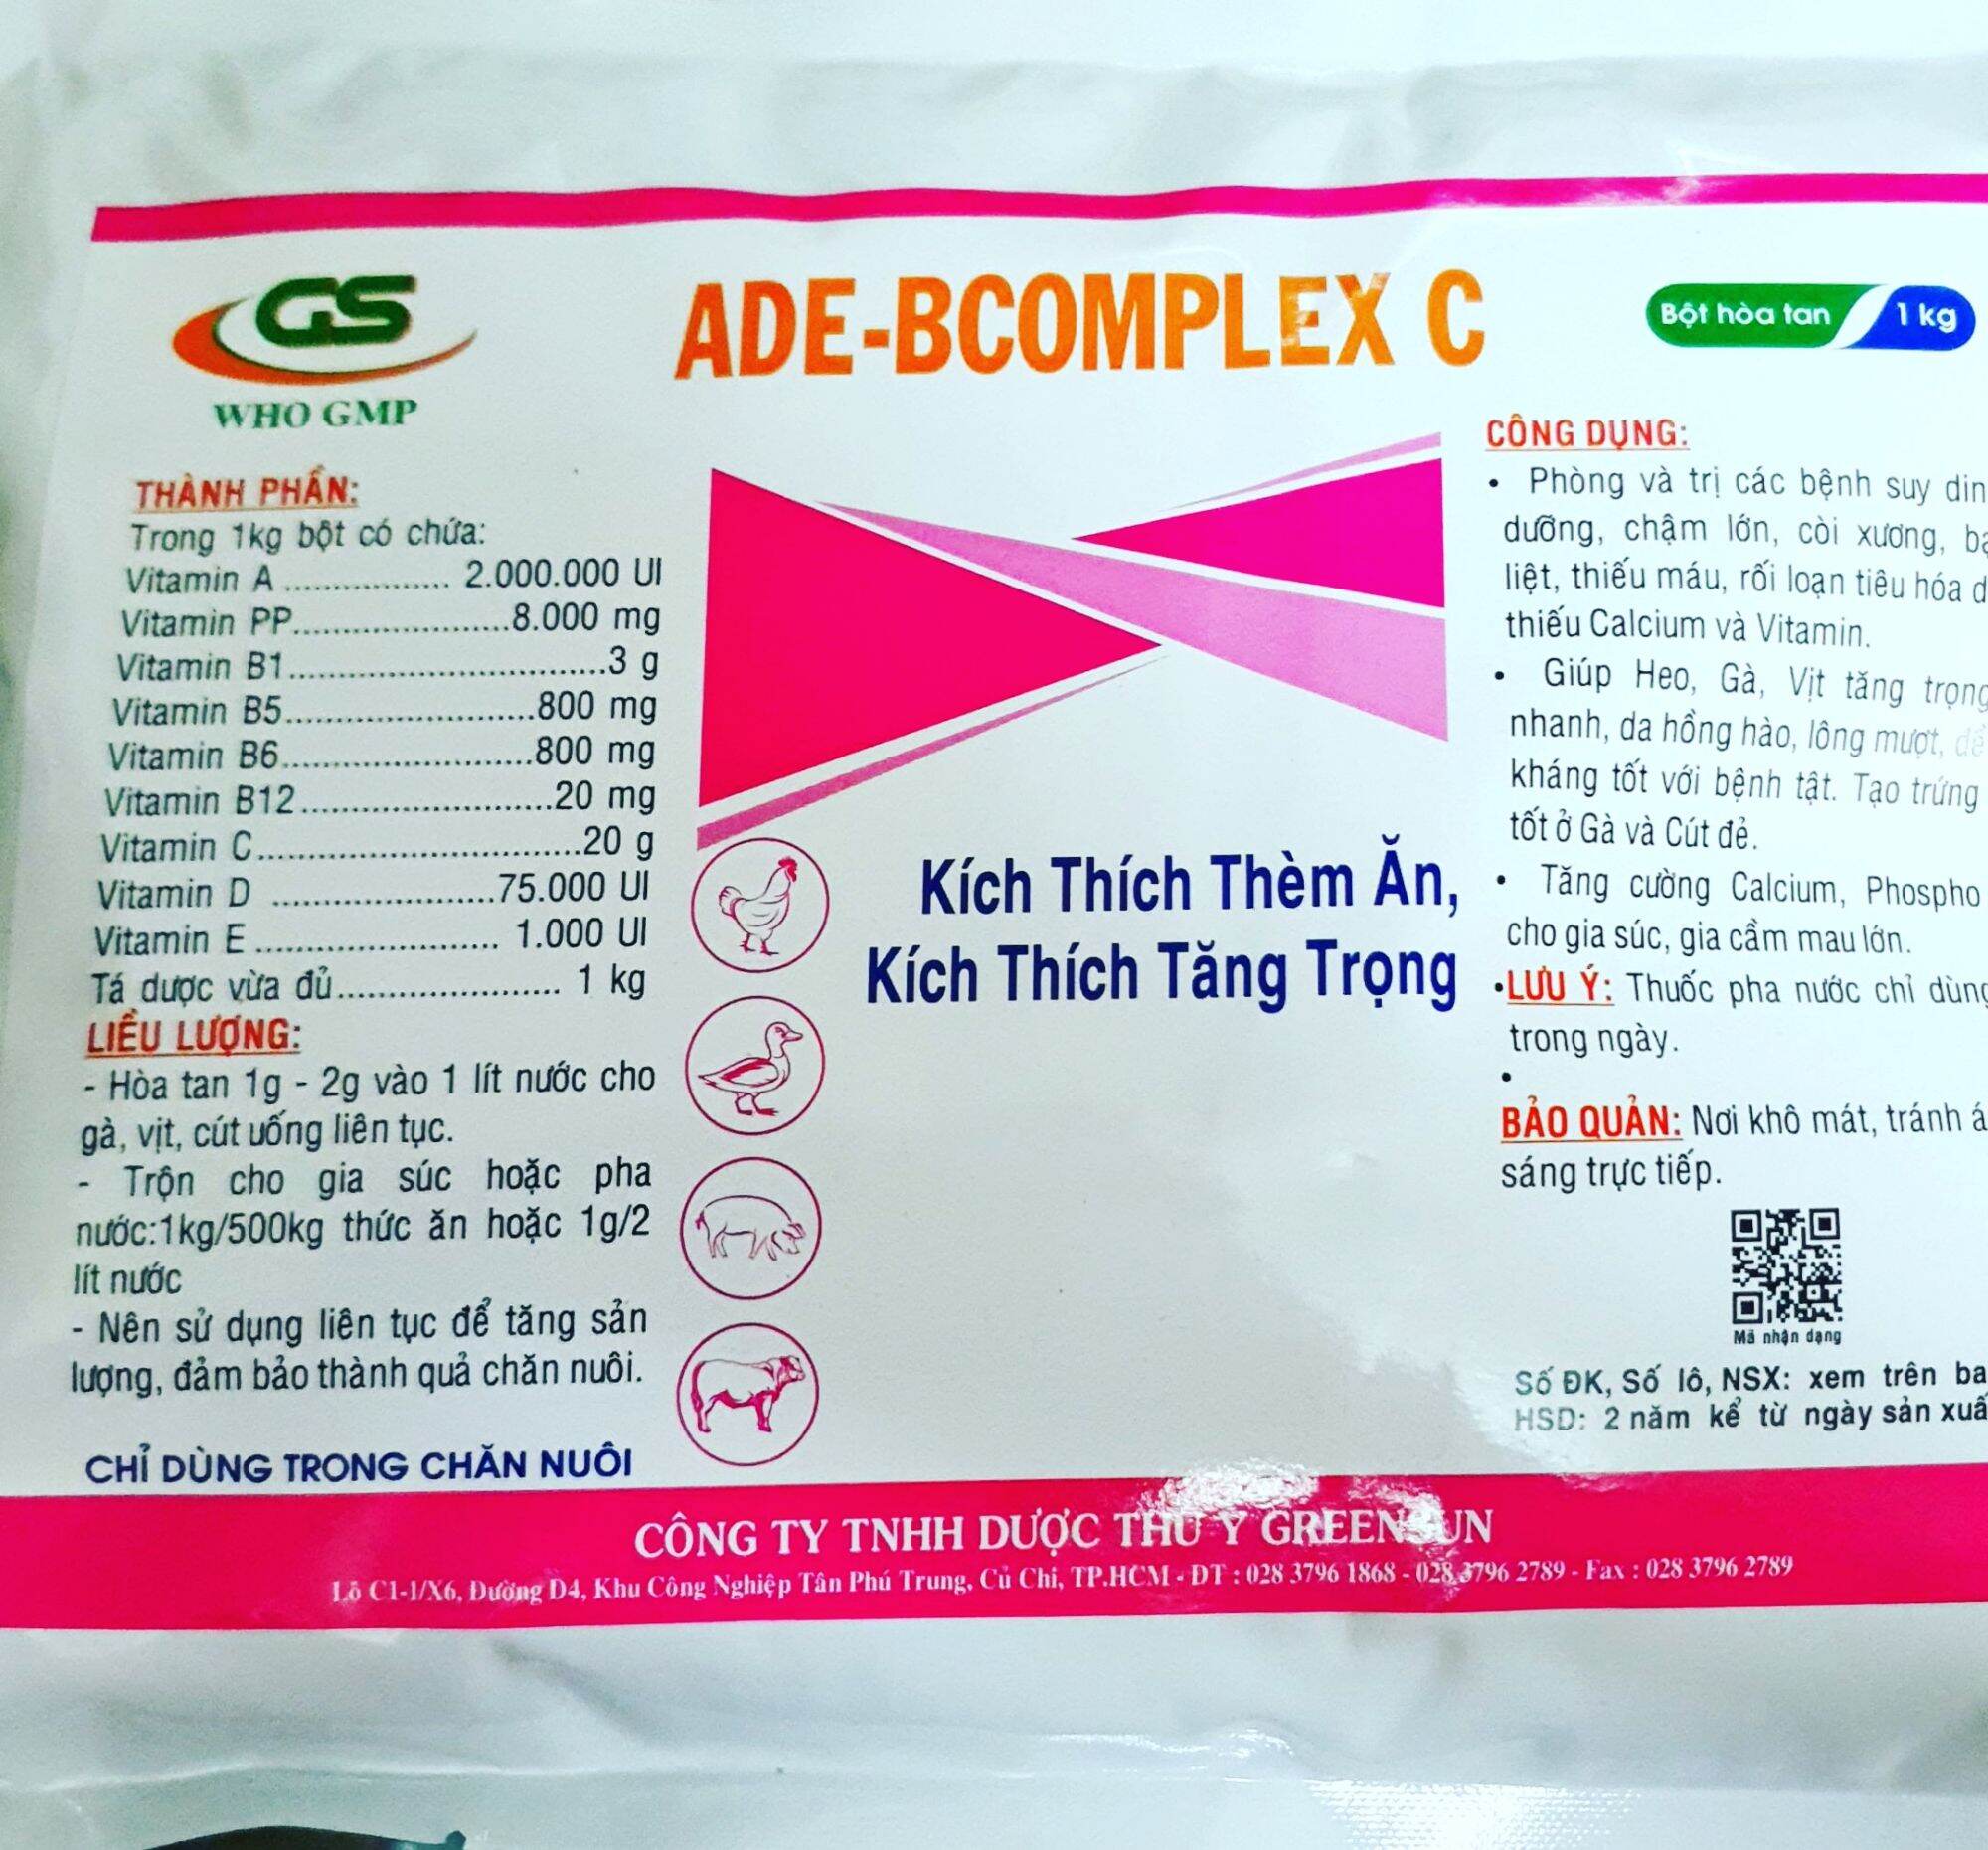 GS ADE B COMPLEX C (1 kg) - Vitamin tổng hợp + ADE kích thích thèm ăn chống còi hồng da mượt lông cho gà đá vịt heo bò